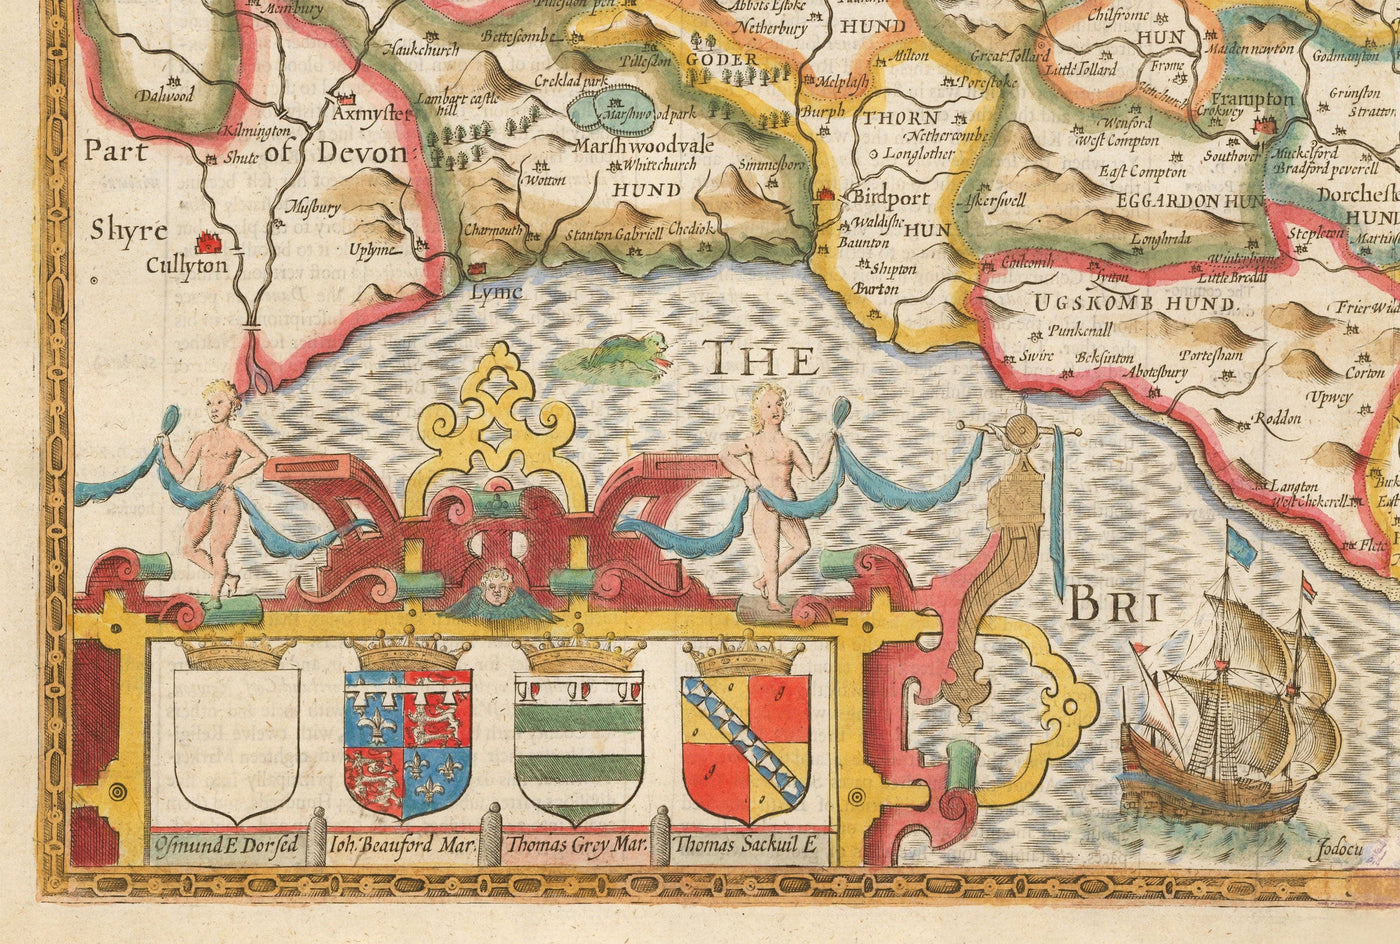 Viejo mapa de Dorset en 1611 por John Speed ​​- Poole, Weymouth, Dorchester, Bridport